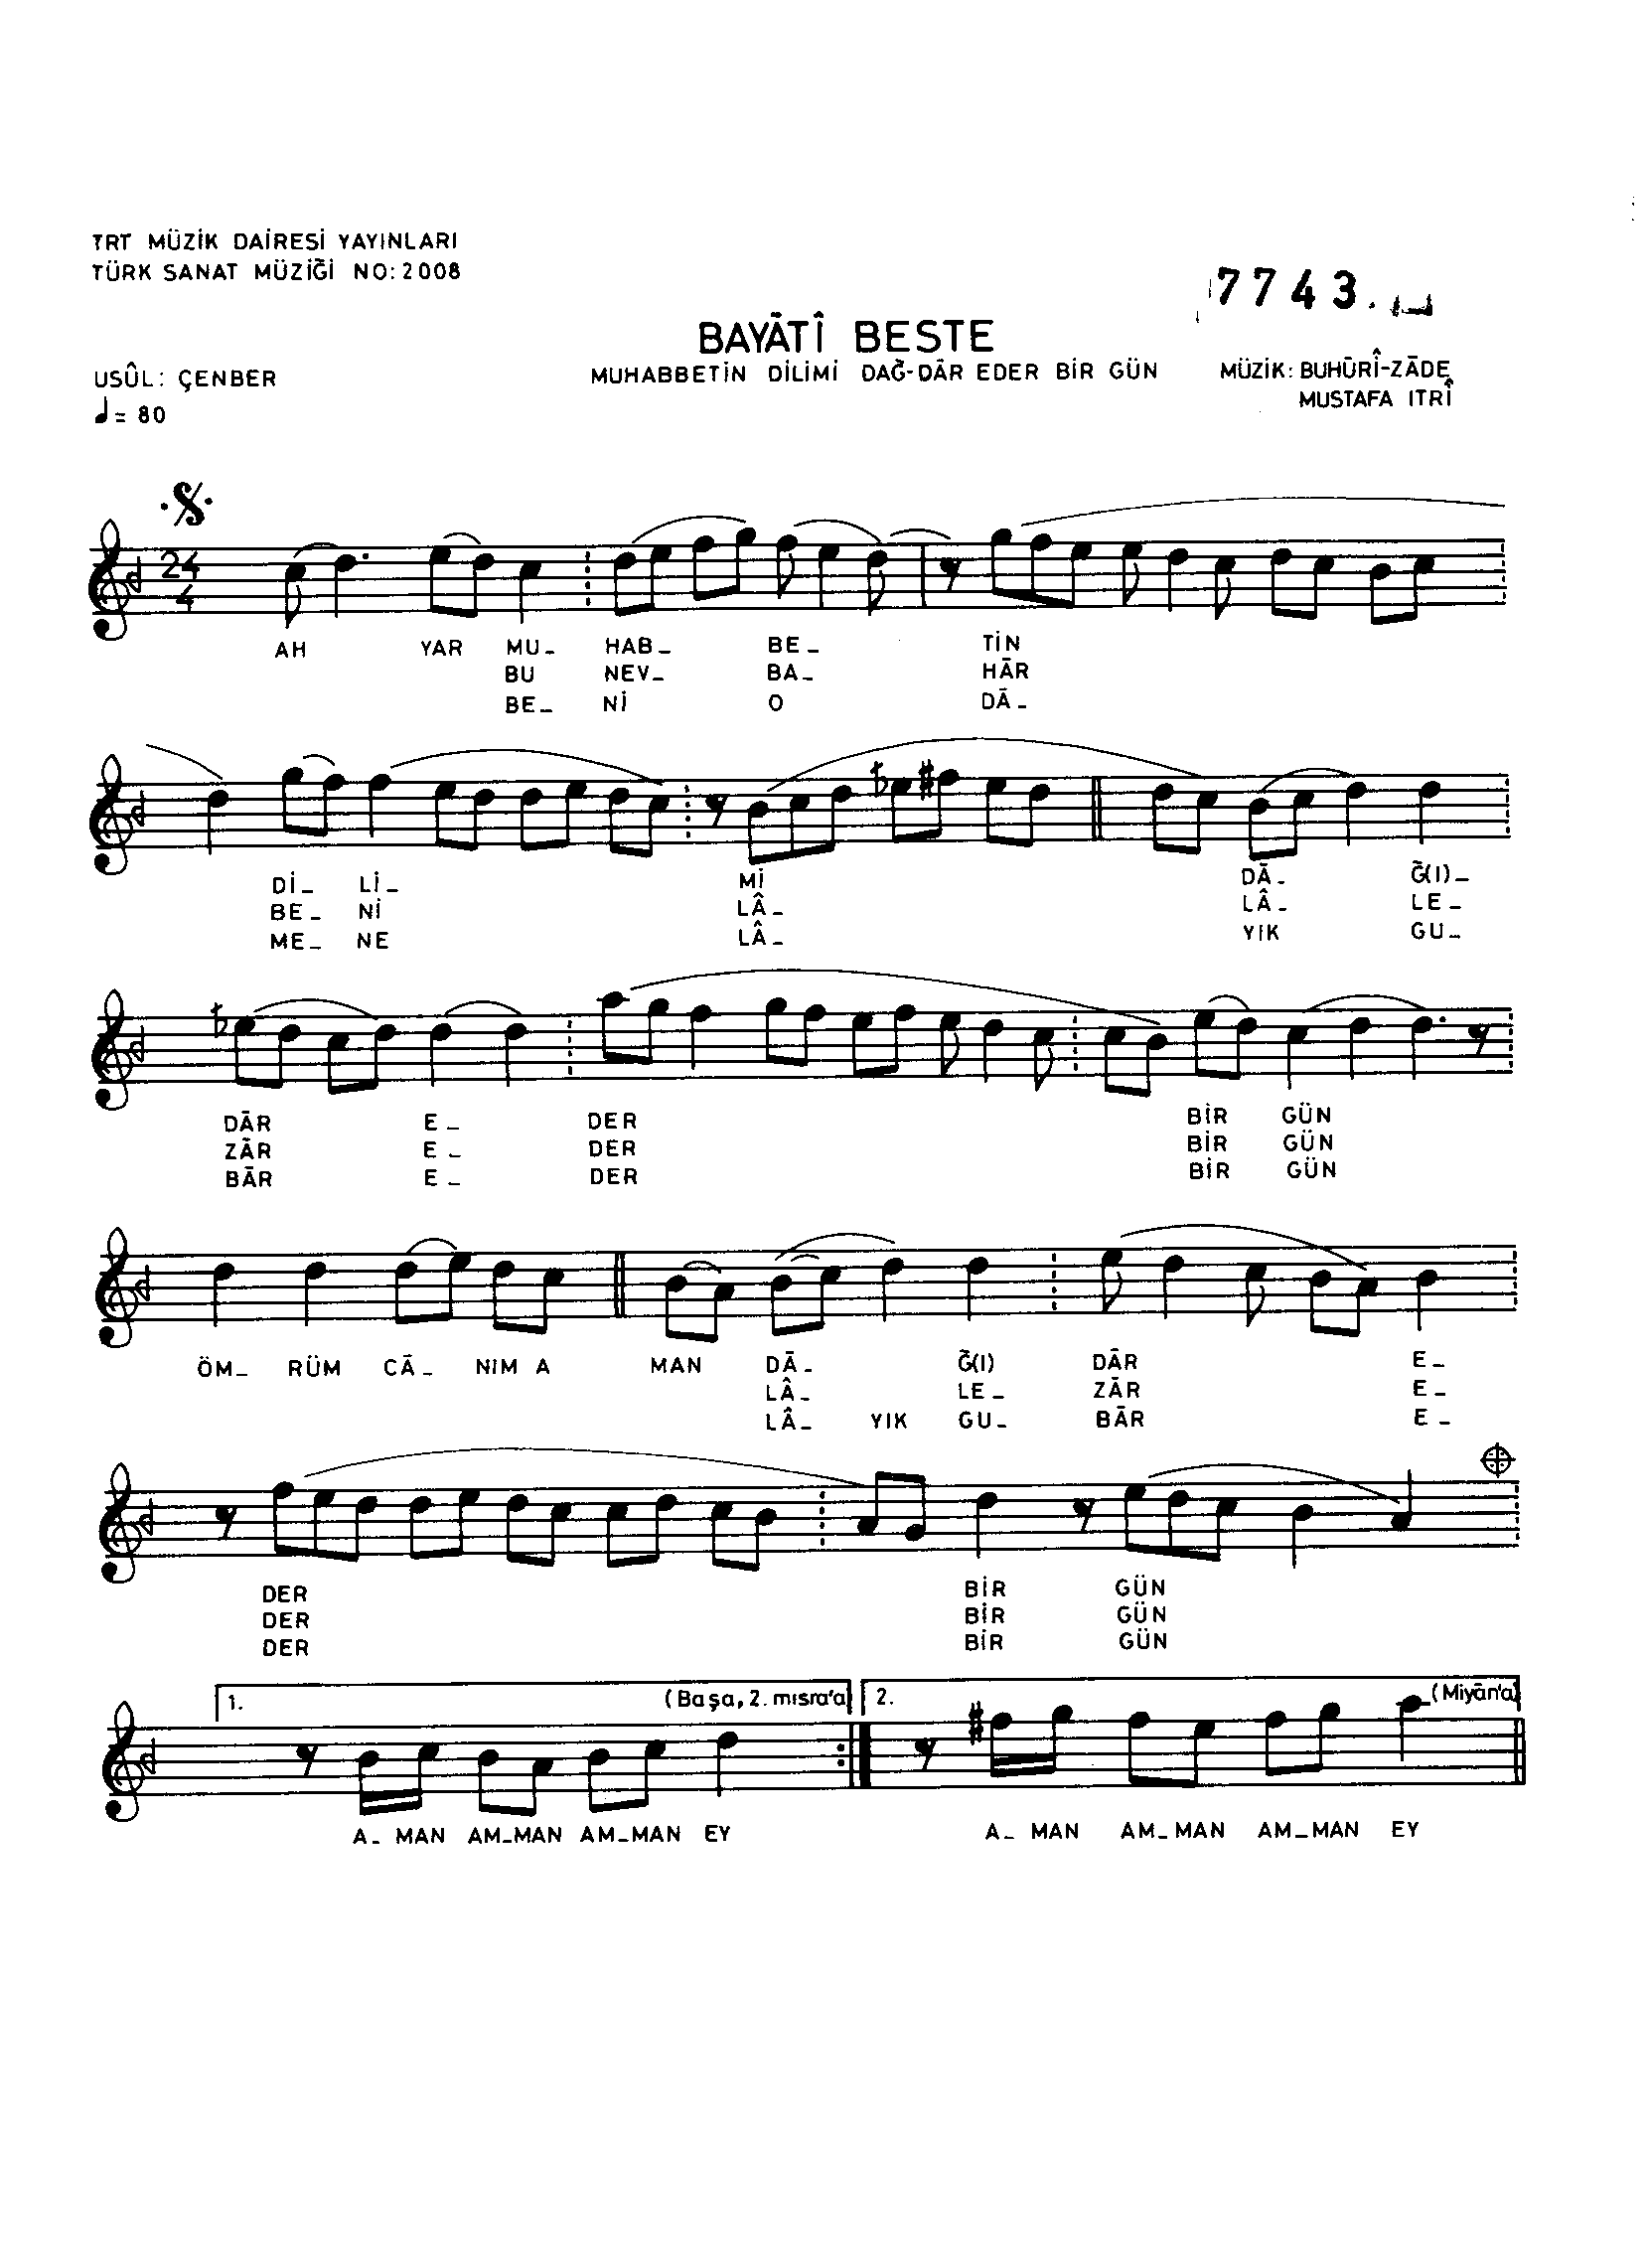 Beyâtî - Beste - Itrî(Buhûrizâde Mustafa Efendi) - Sayfa 1